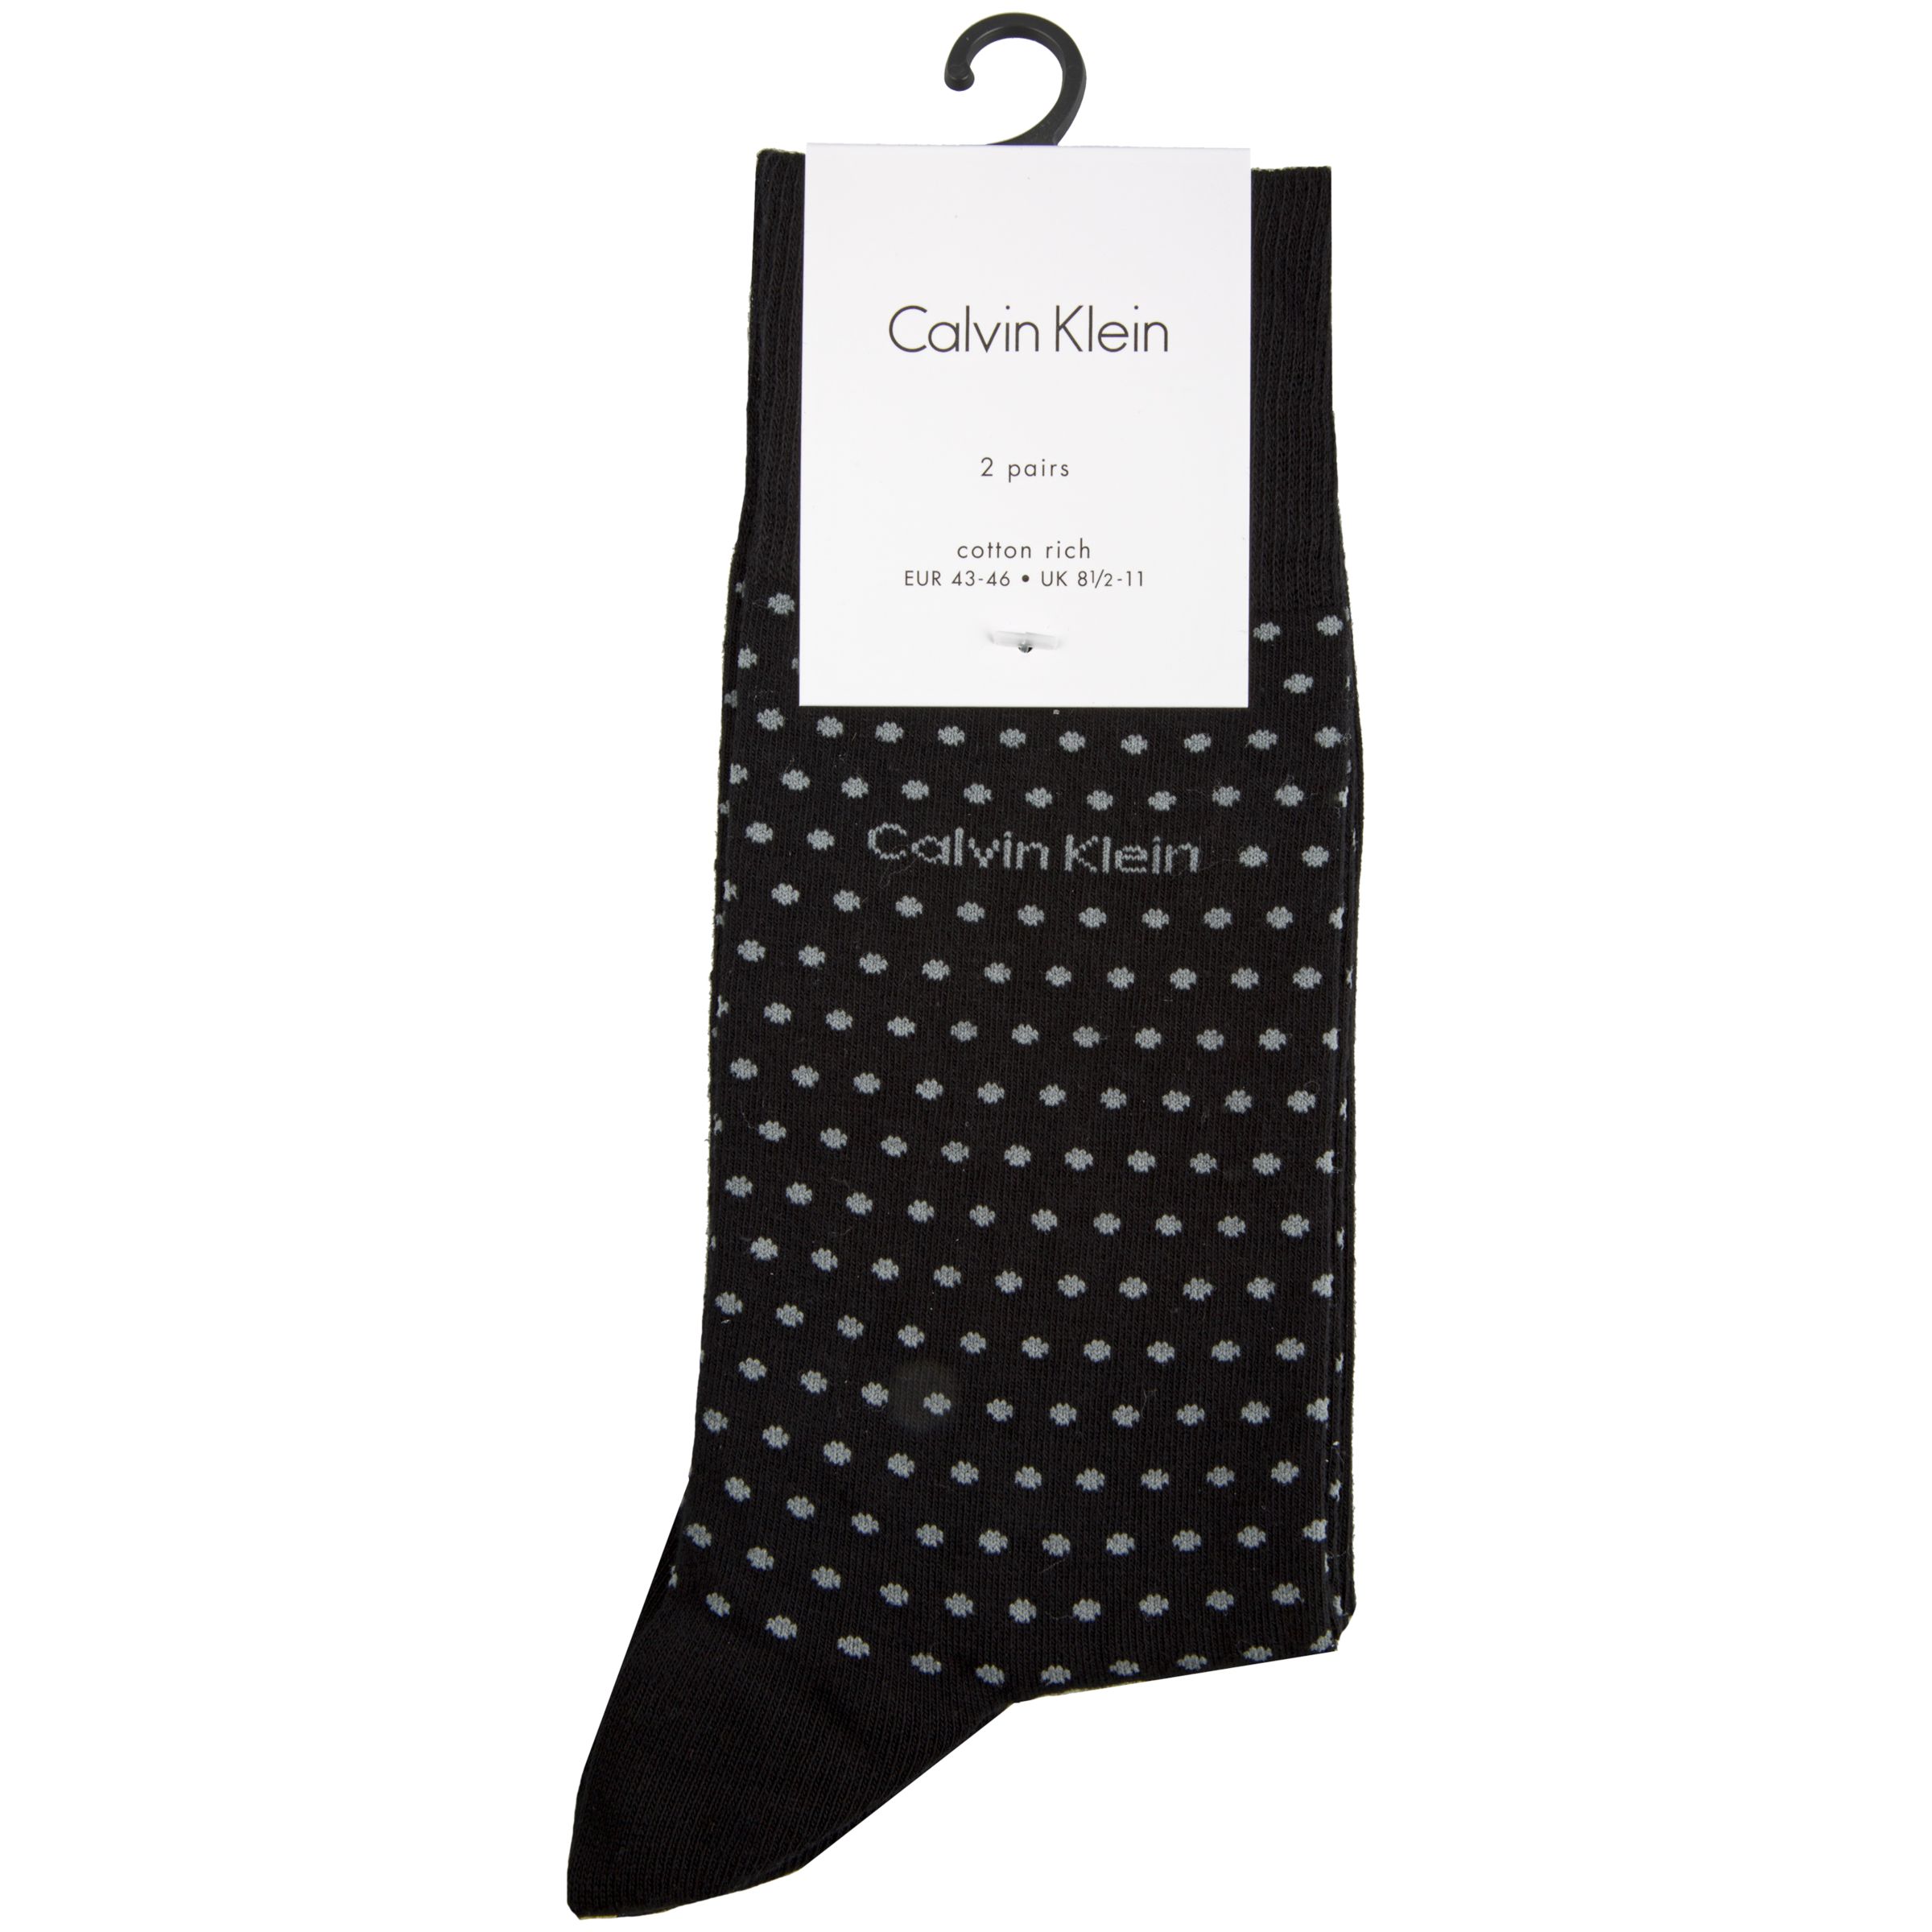 Calvin Klein Dot Plain Socks, Pack of 2, Black/Grey